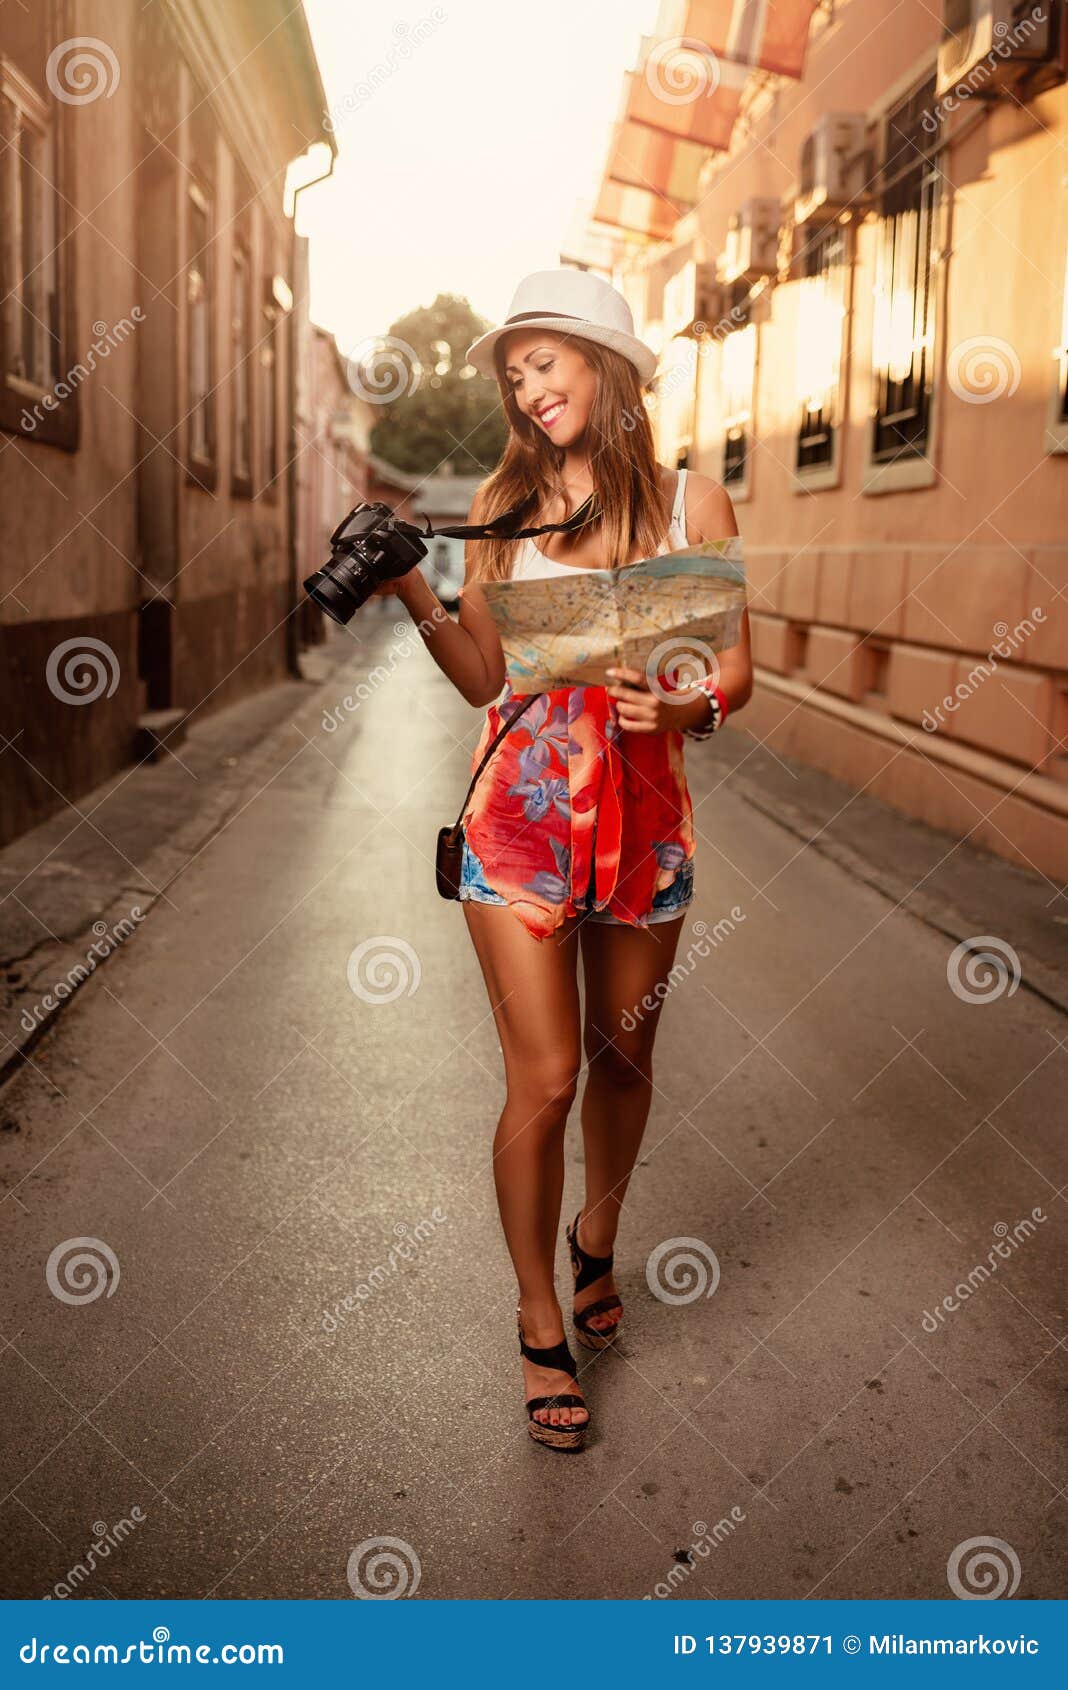 tourist girl image